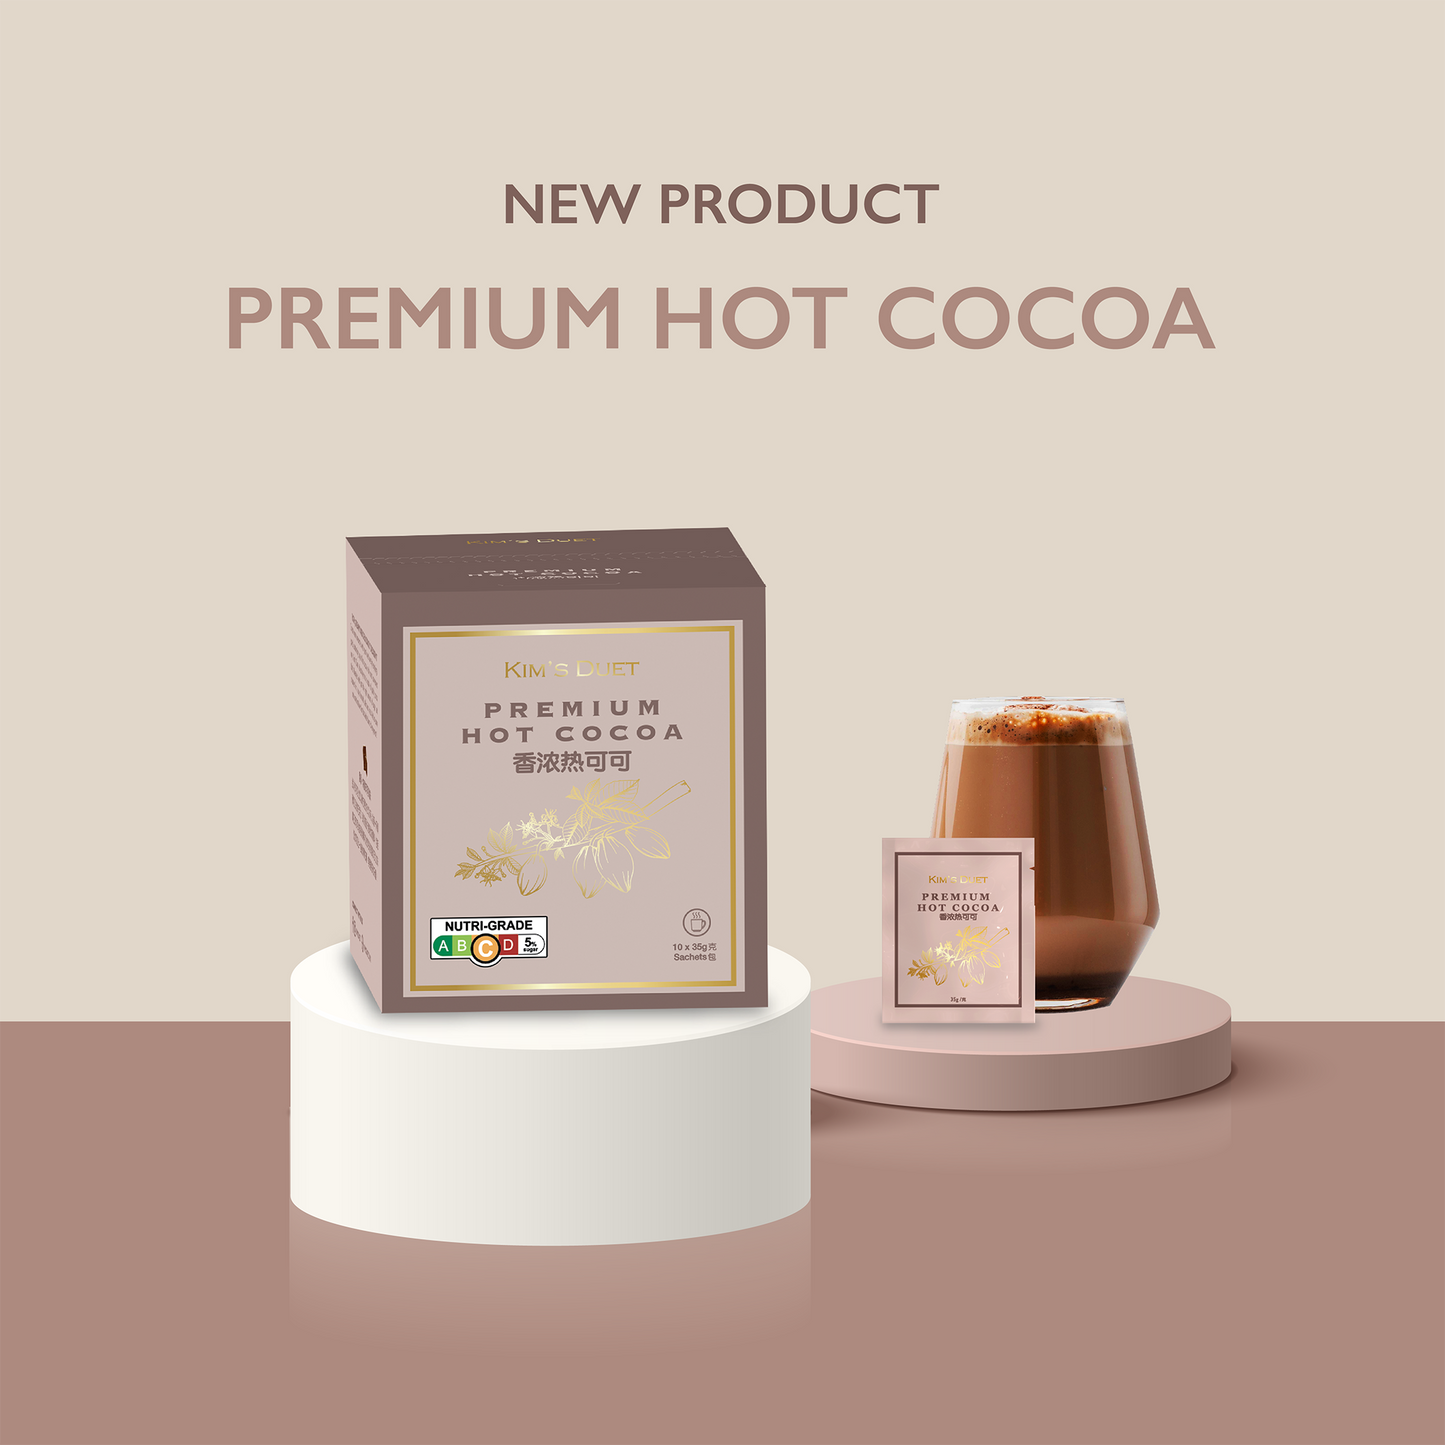 Premium Hot Cocoa